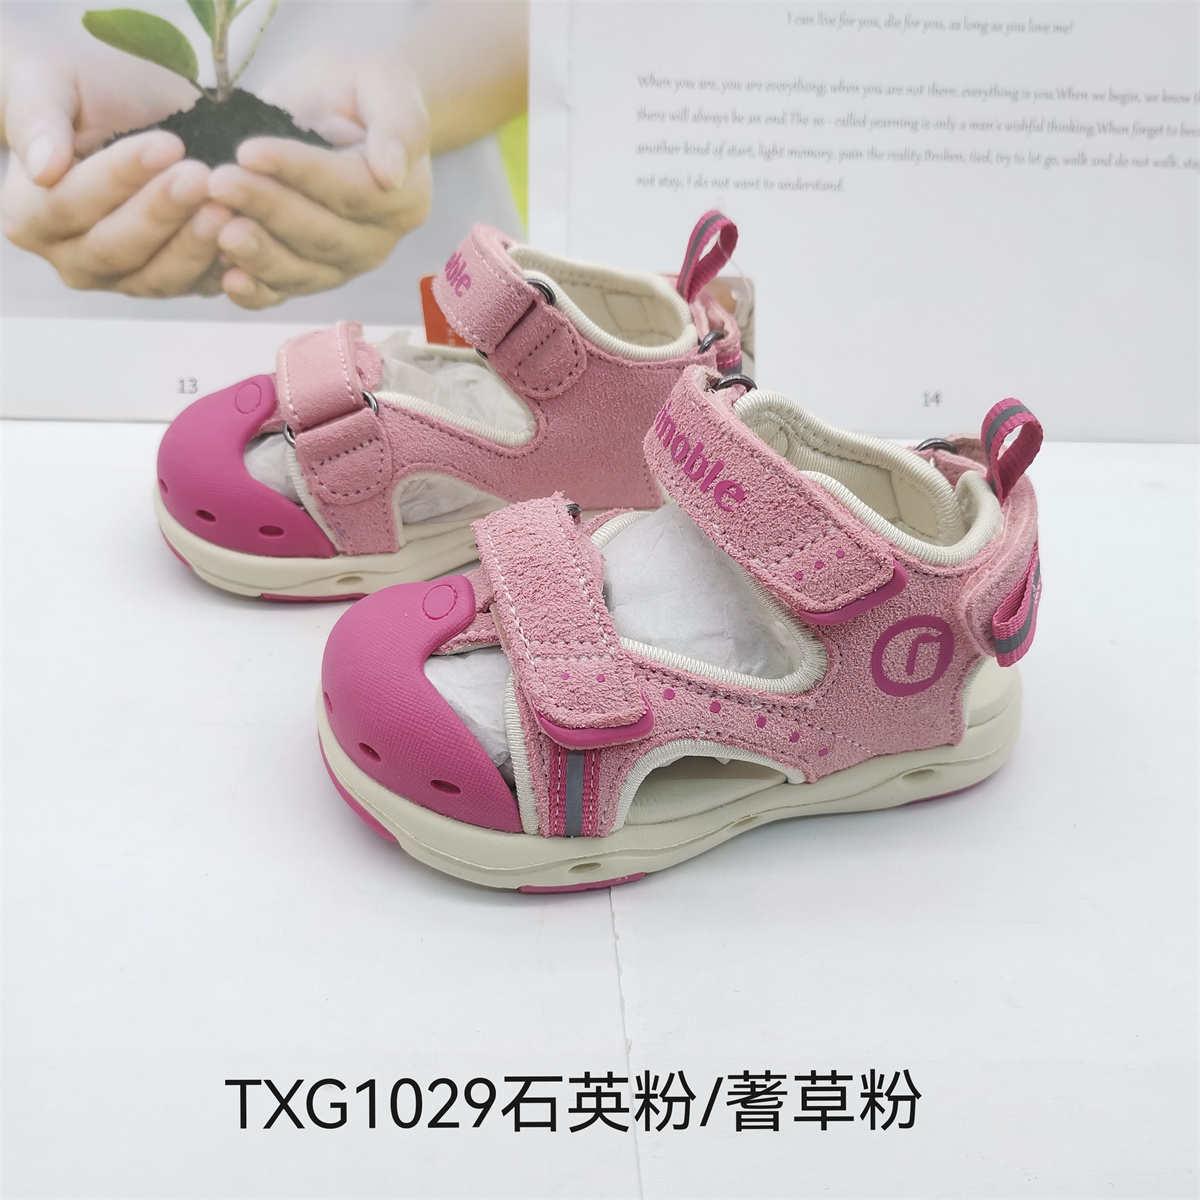 基诺浦夏款机能鞋凉鞋男童女童运动鞋跑步鞋TXG1029.1033.1035